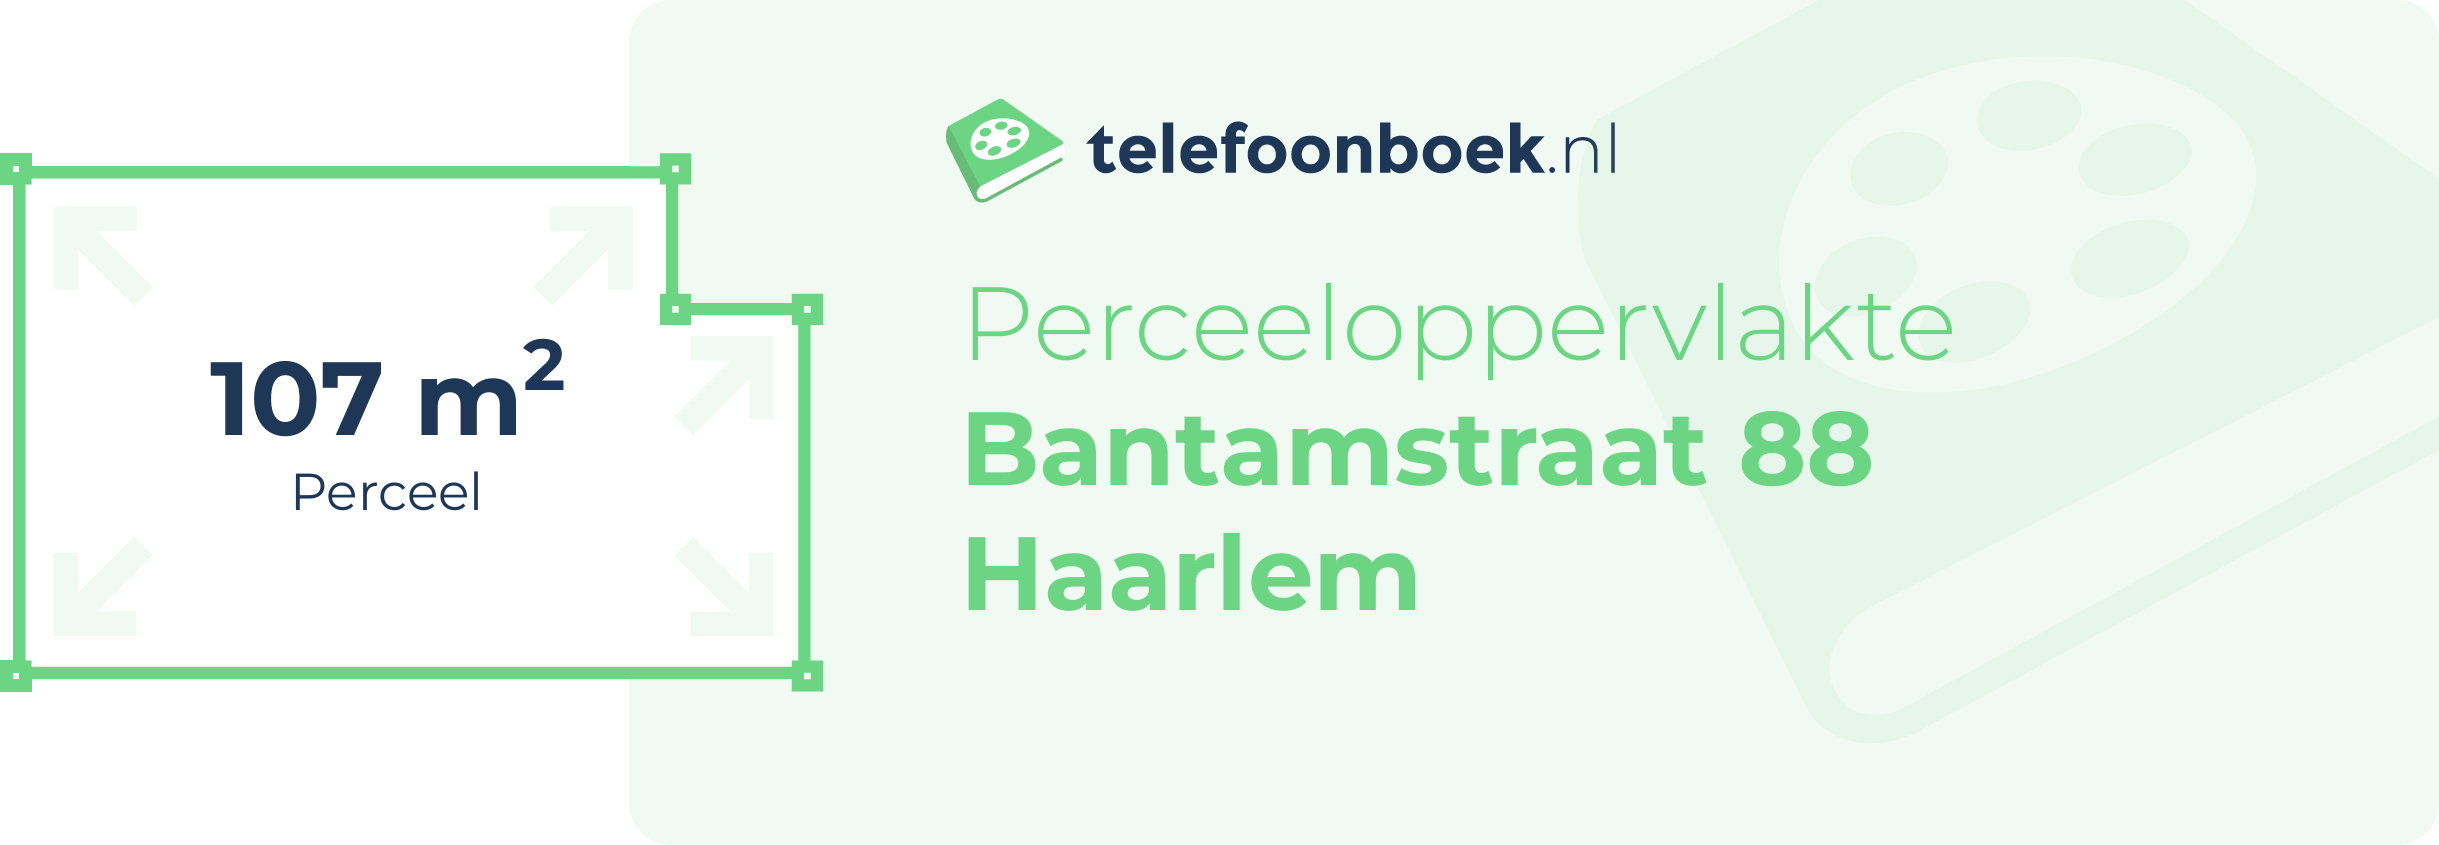 Perceeloppervlakte Bantamstraat 88 Haarlem